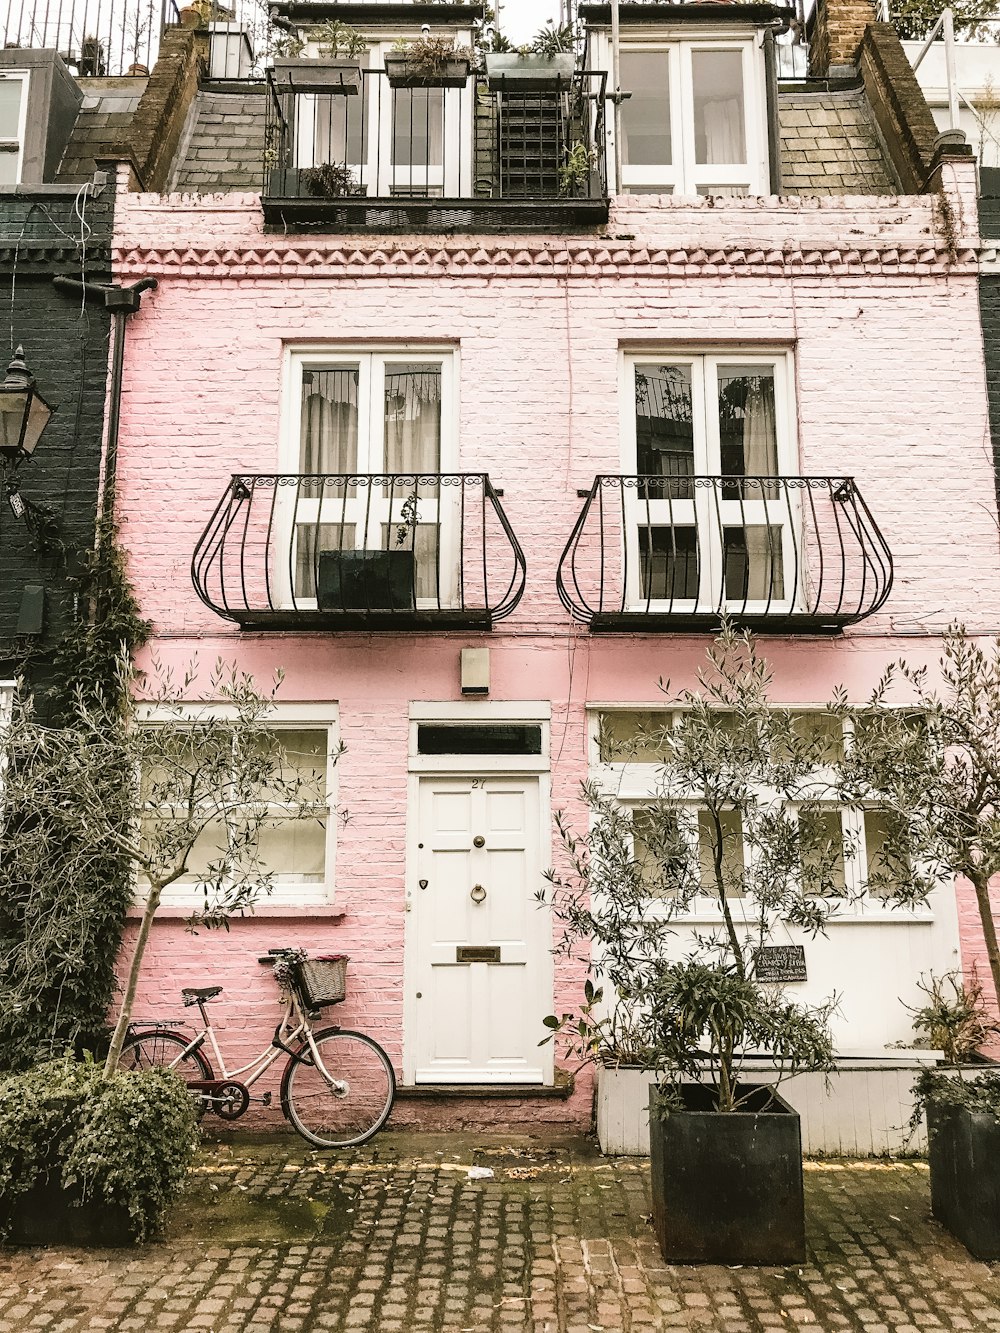 Fahrrad neben rosa Wand